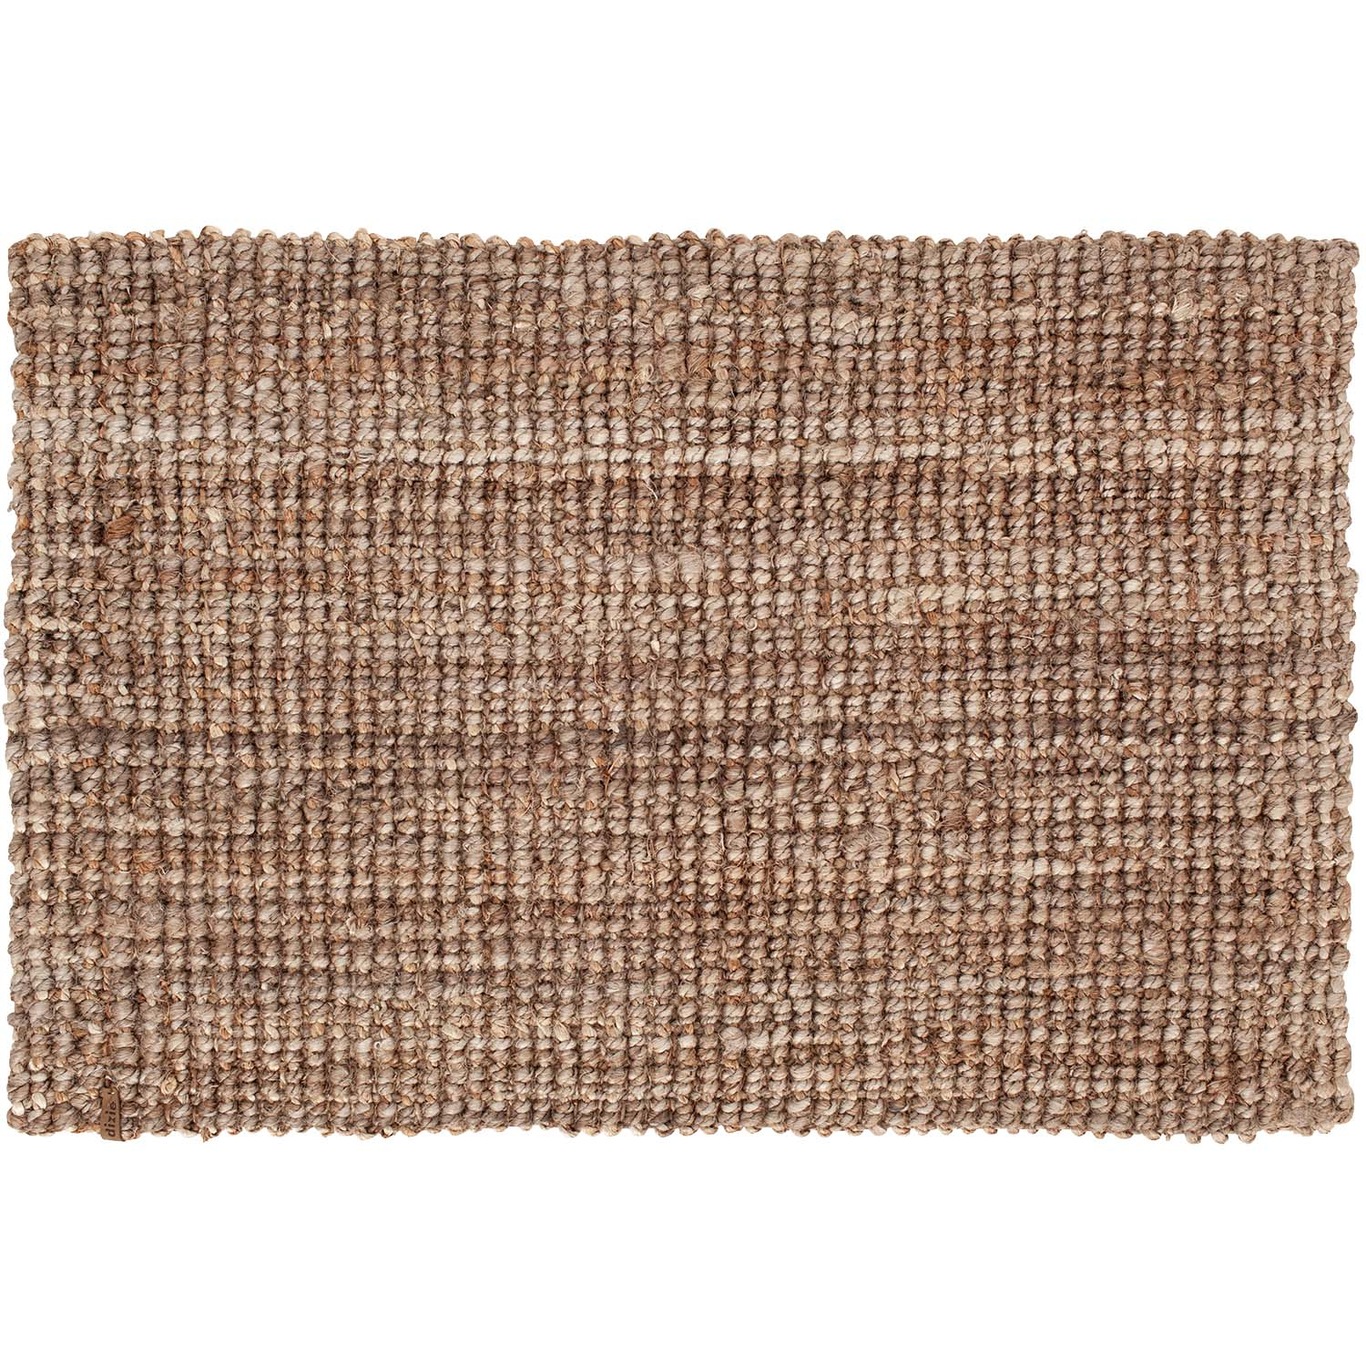 Jute Doormat 60x90 cm, Natural Grey